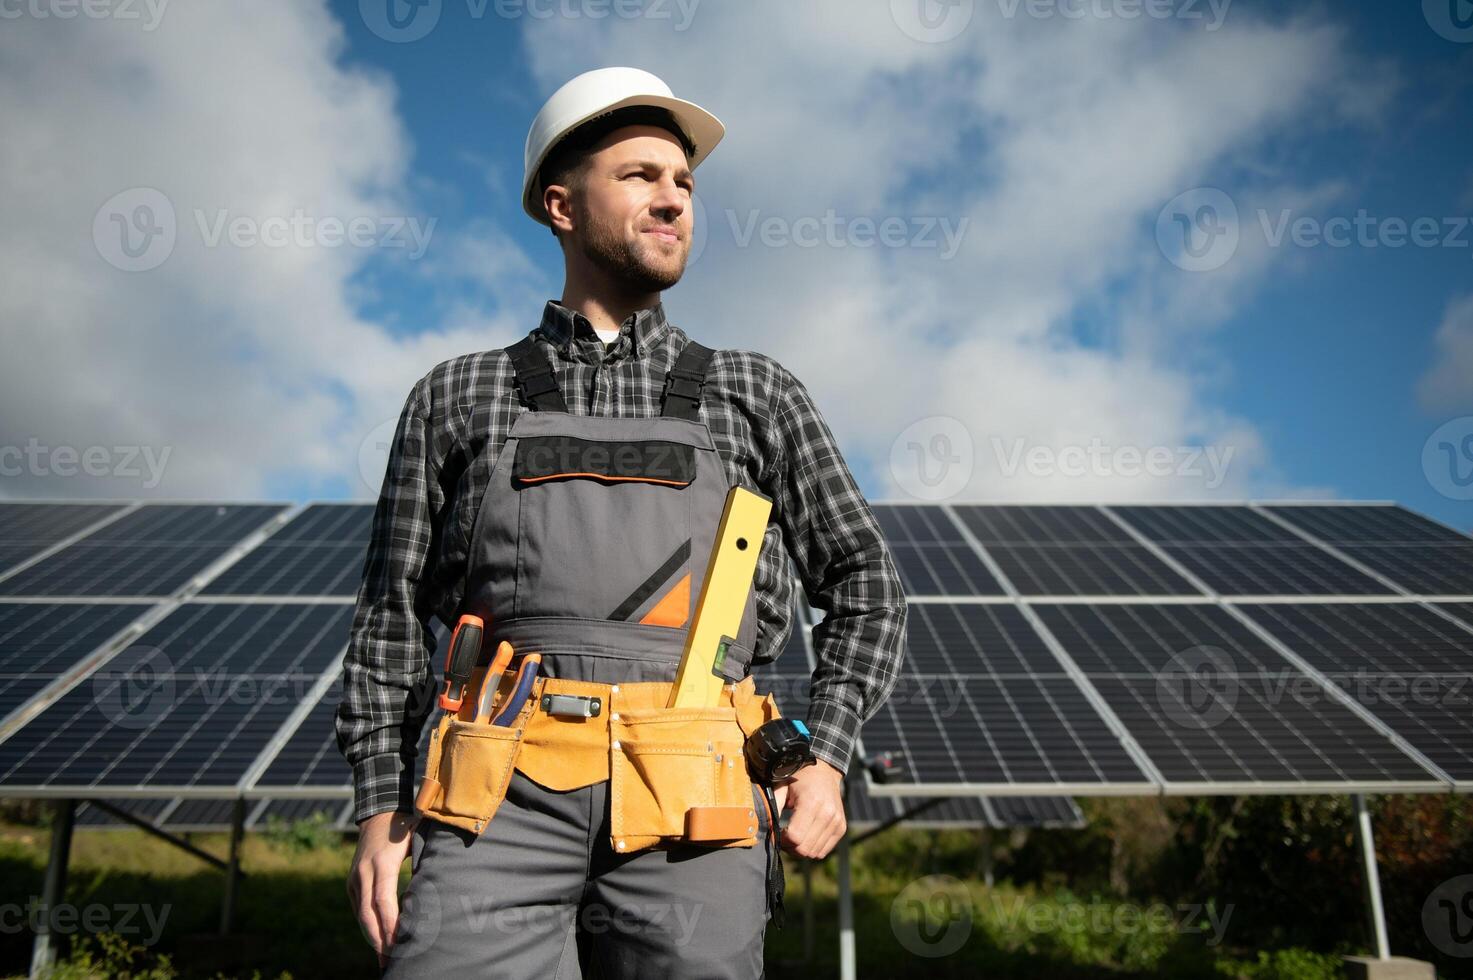 especialista é inspecionando qualidade do uma solar baterias. trabalhador dentro uniforme e capacete com equipamento. ecologia poder conservação conceito. foto